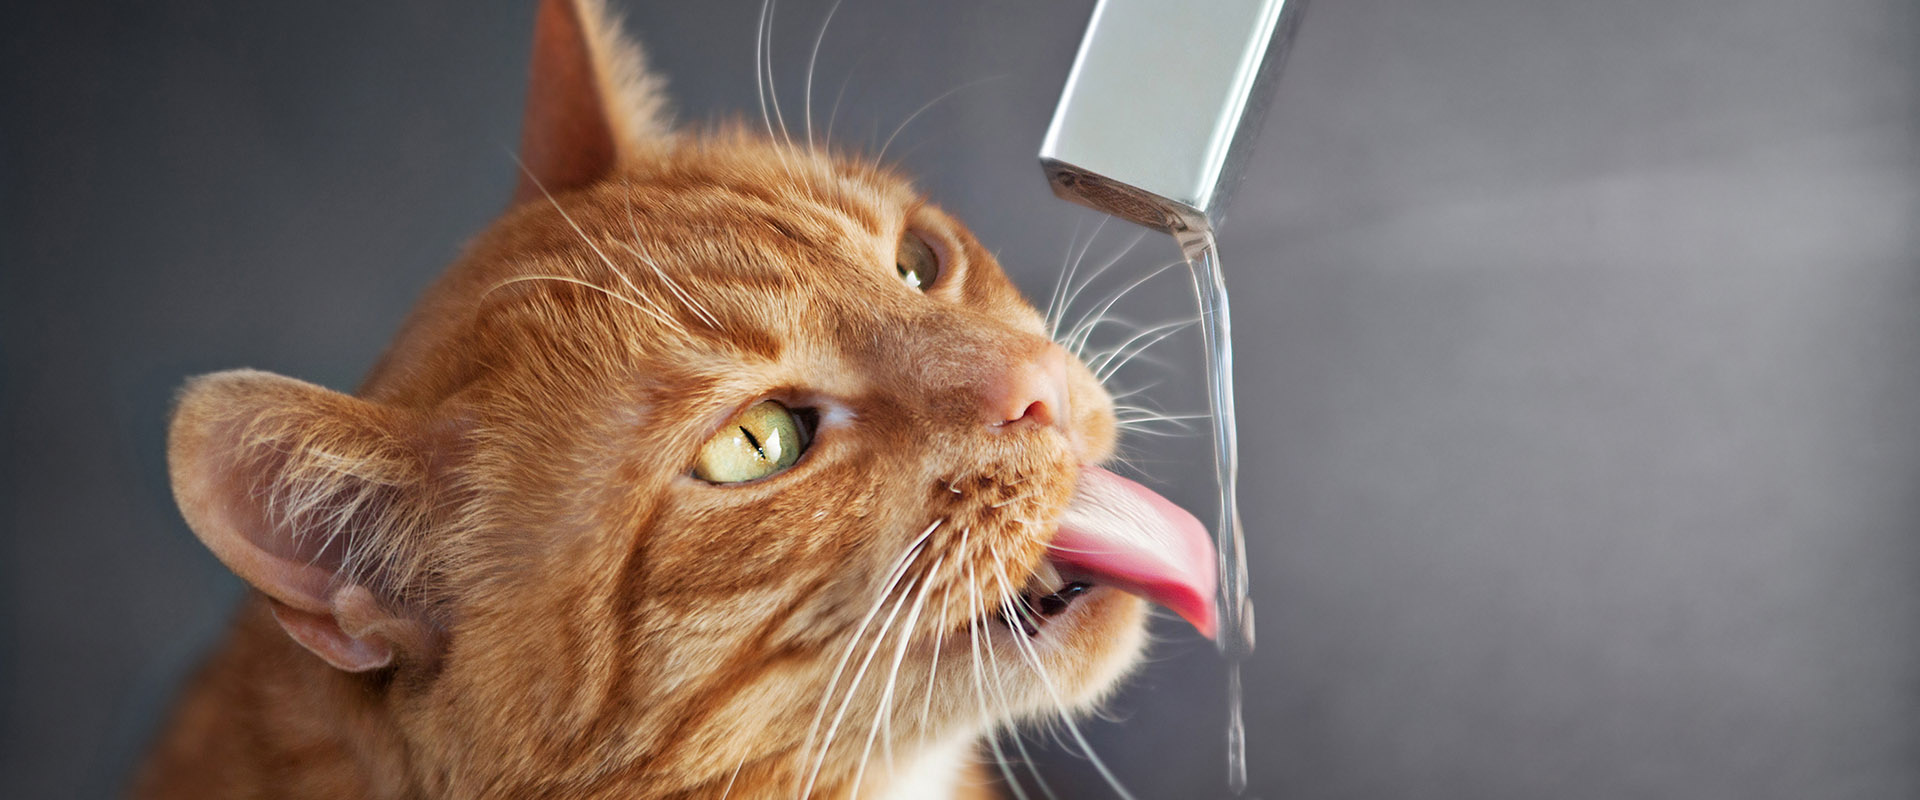 вода для кошки